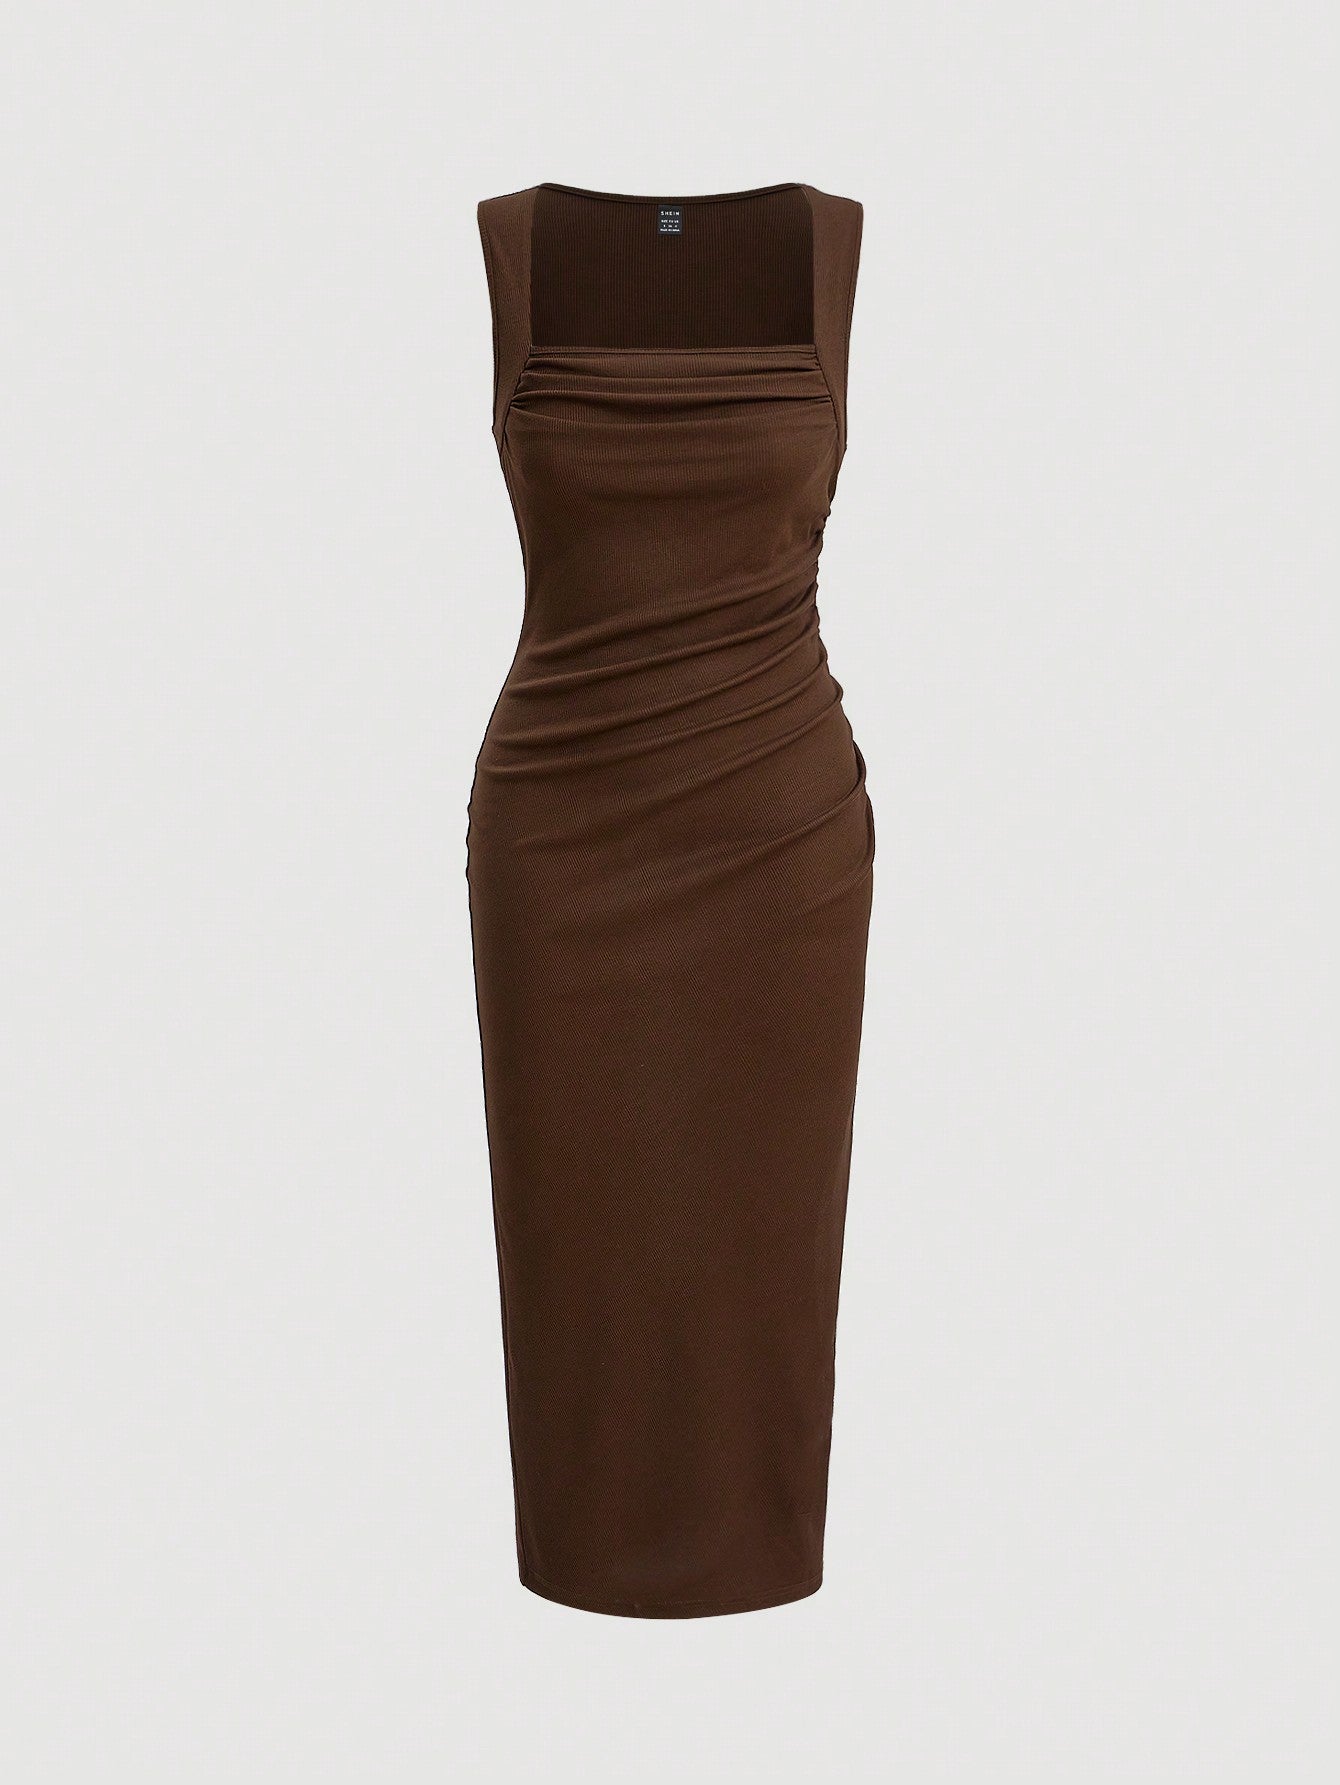 SHEIN Curve Solid Rib-Knit Backless Dress, Brown, 2XL